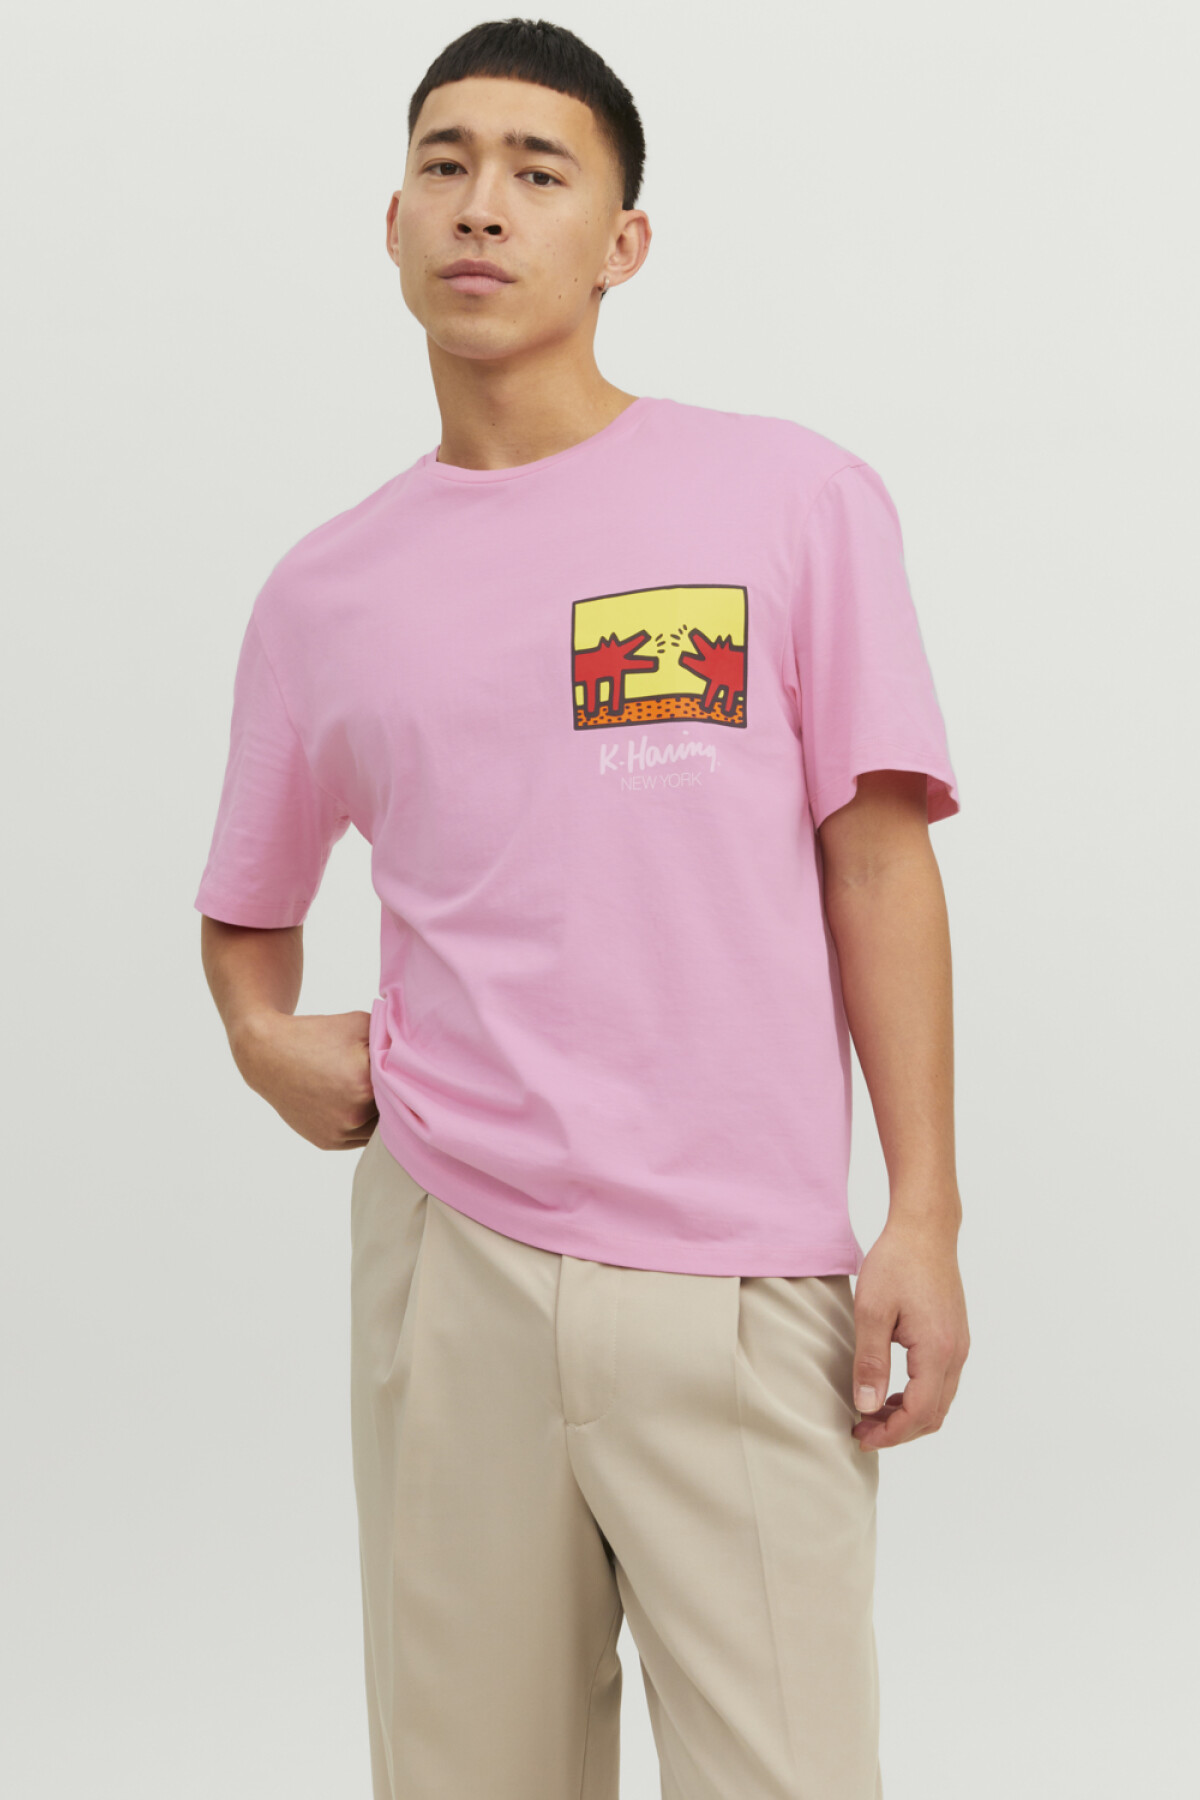 Camiseta Keith Haring Prism Pink